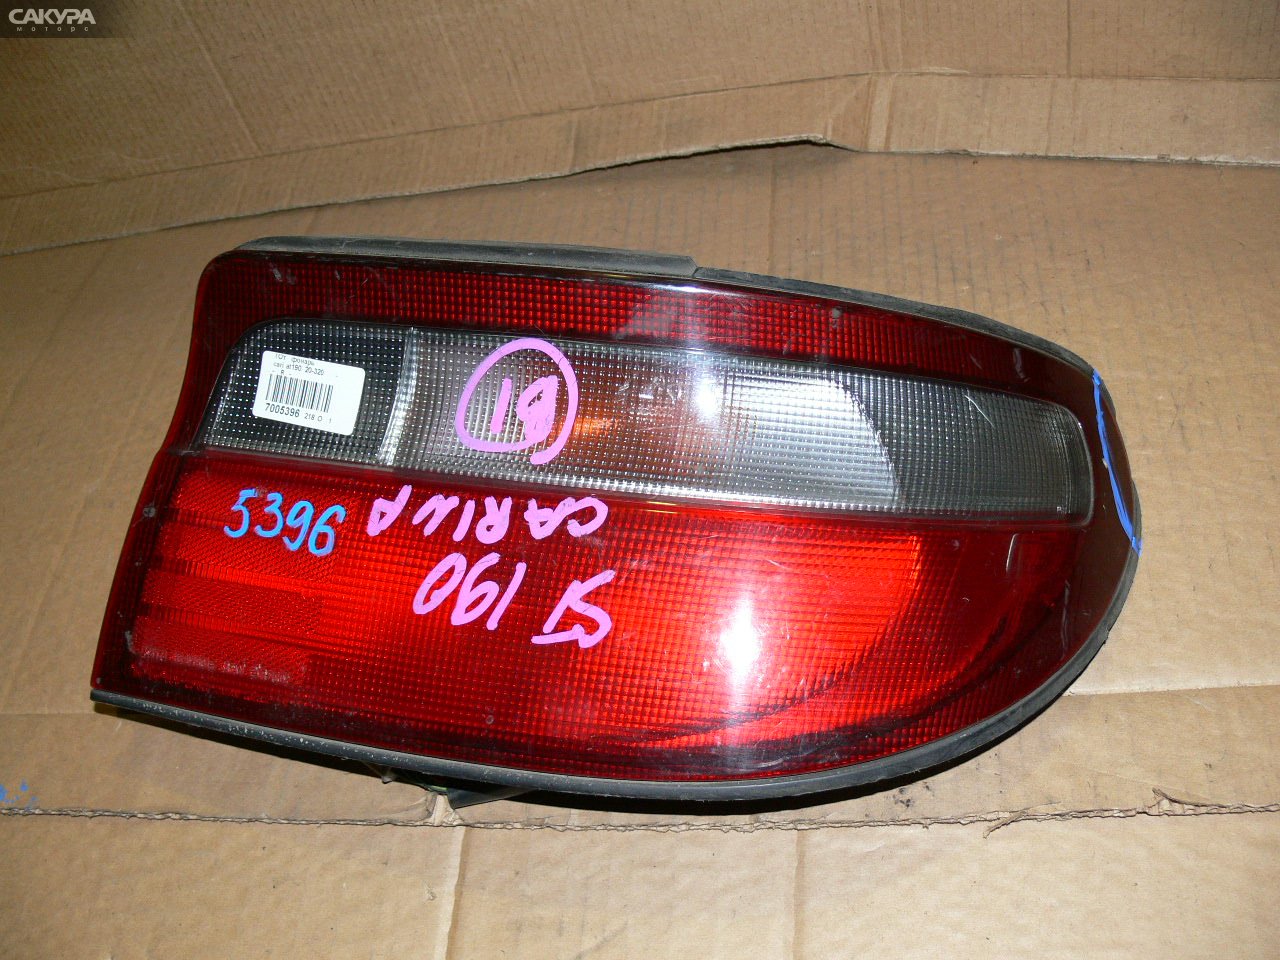 Фонарь стоп-сигнала правый Toyota Carina AT190 20-320: купить в Сакура Иркутск.